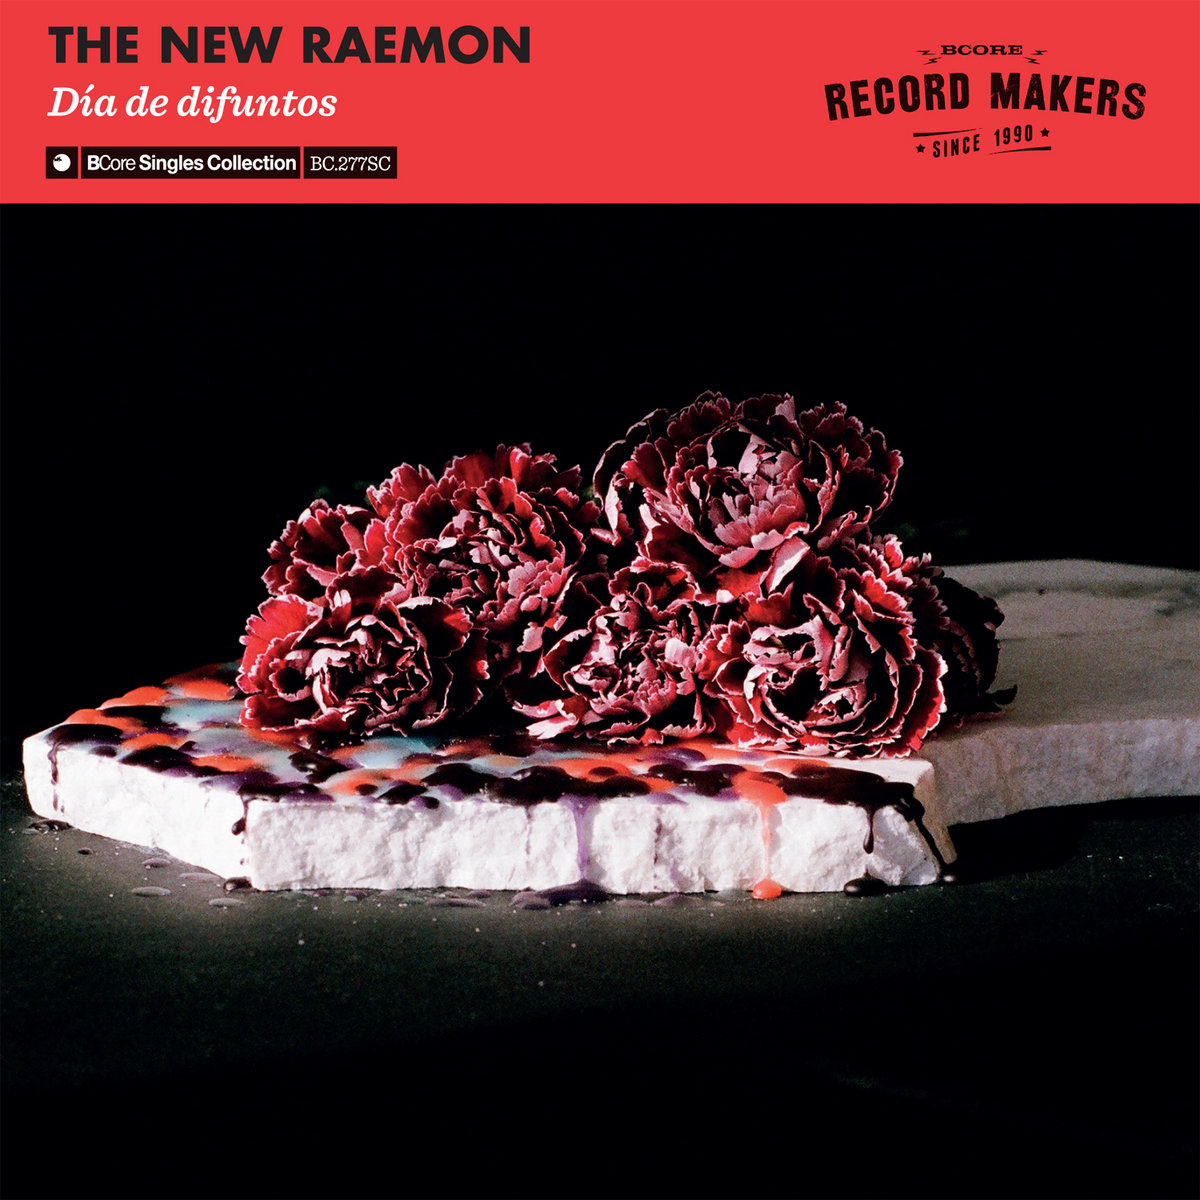 The New Raemon "Día de difuntos"